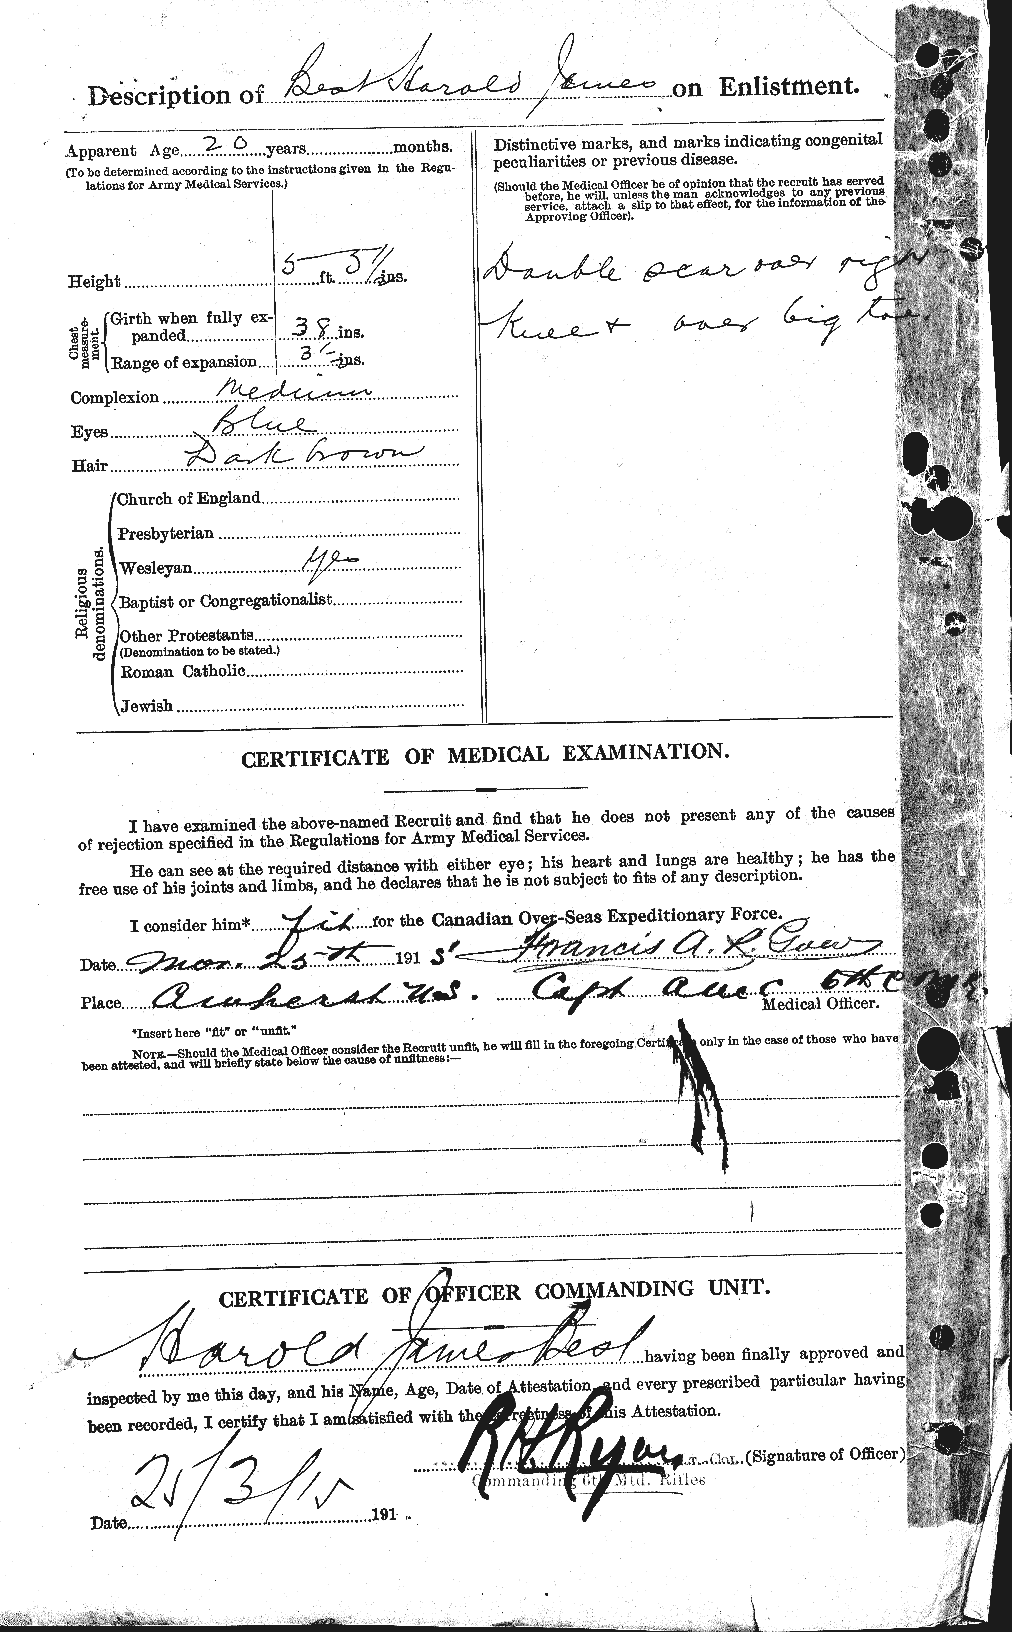 Dossiers du Personnel de la Première Guerre mondiale - CEC 240265b